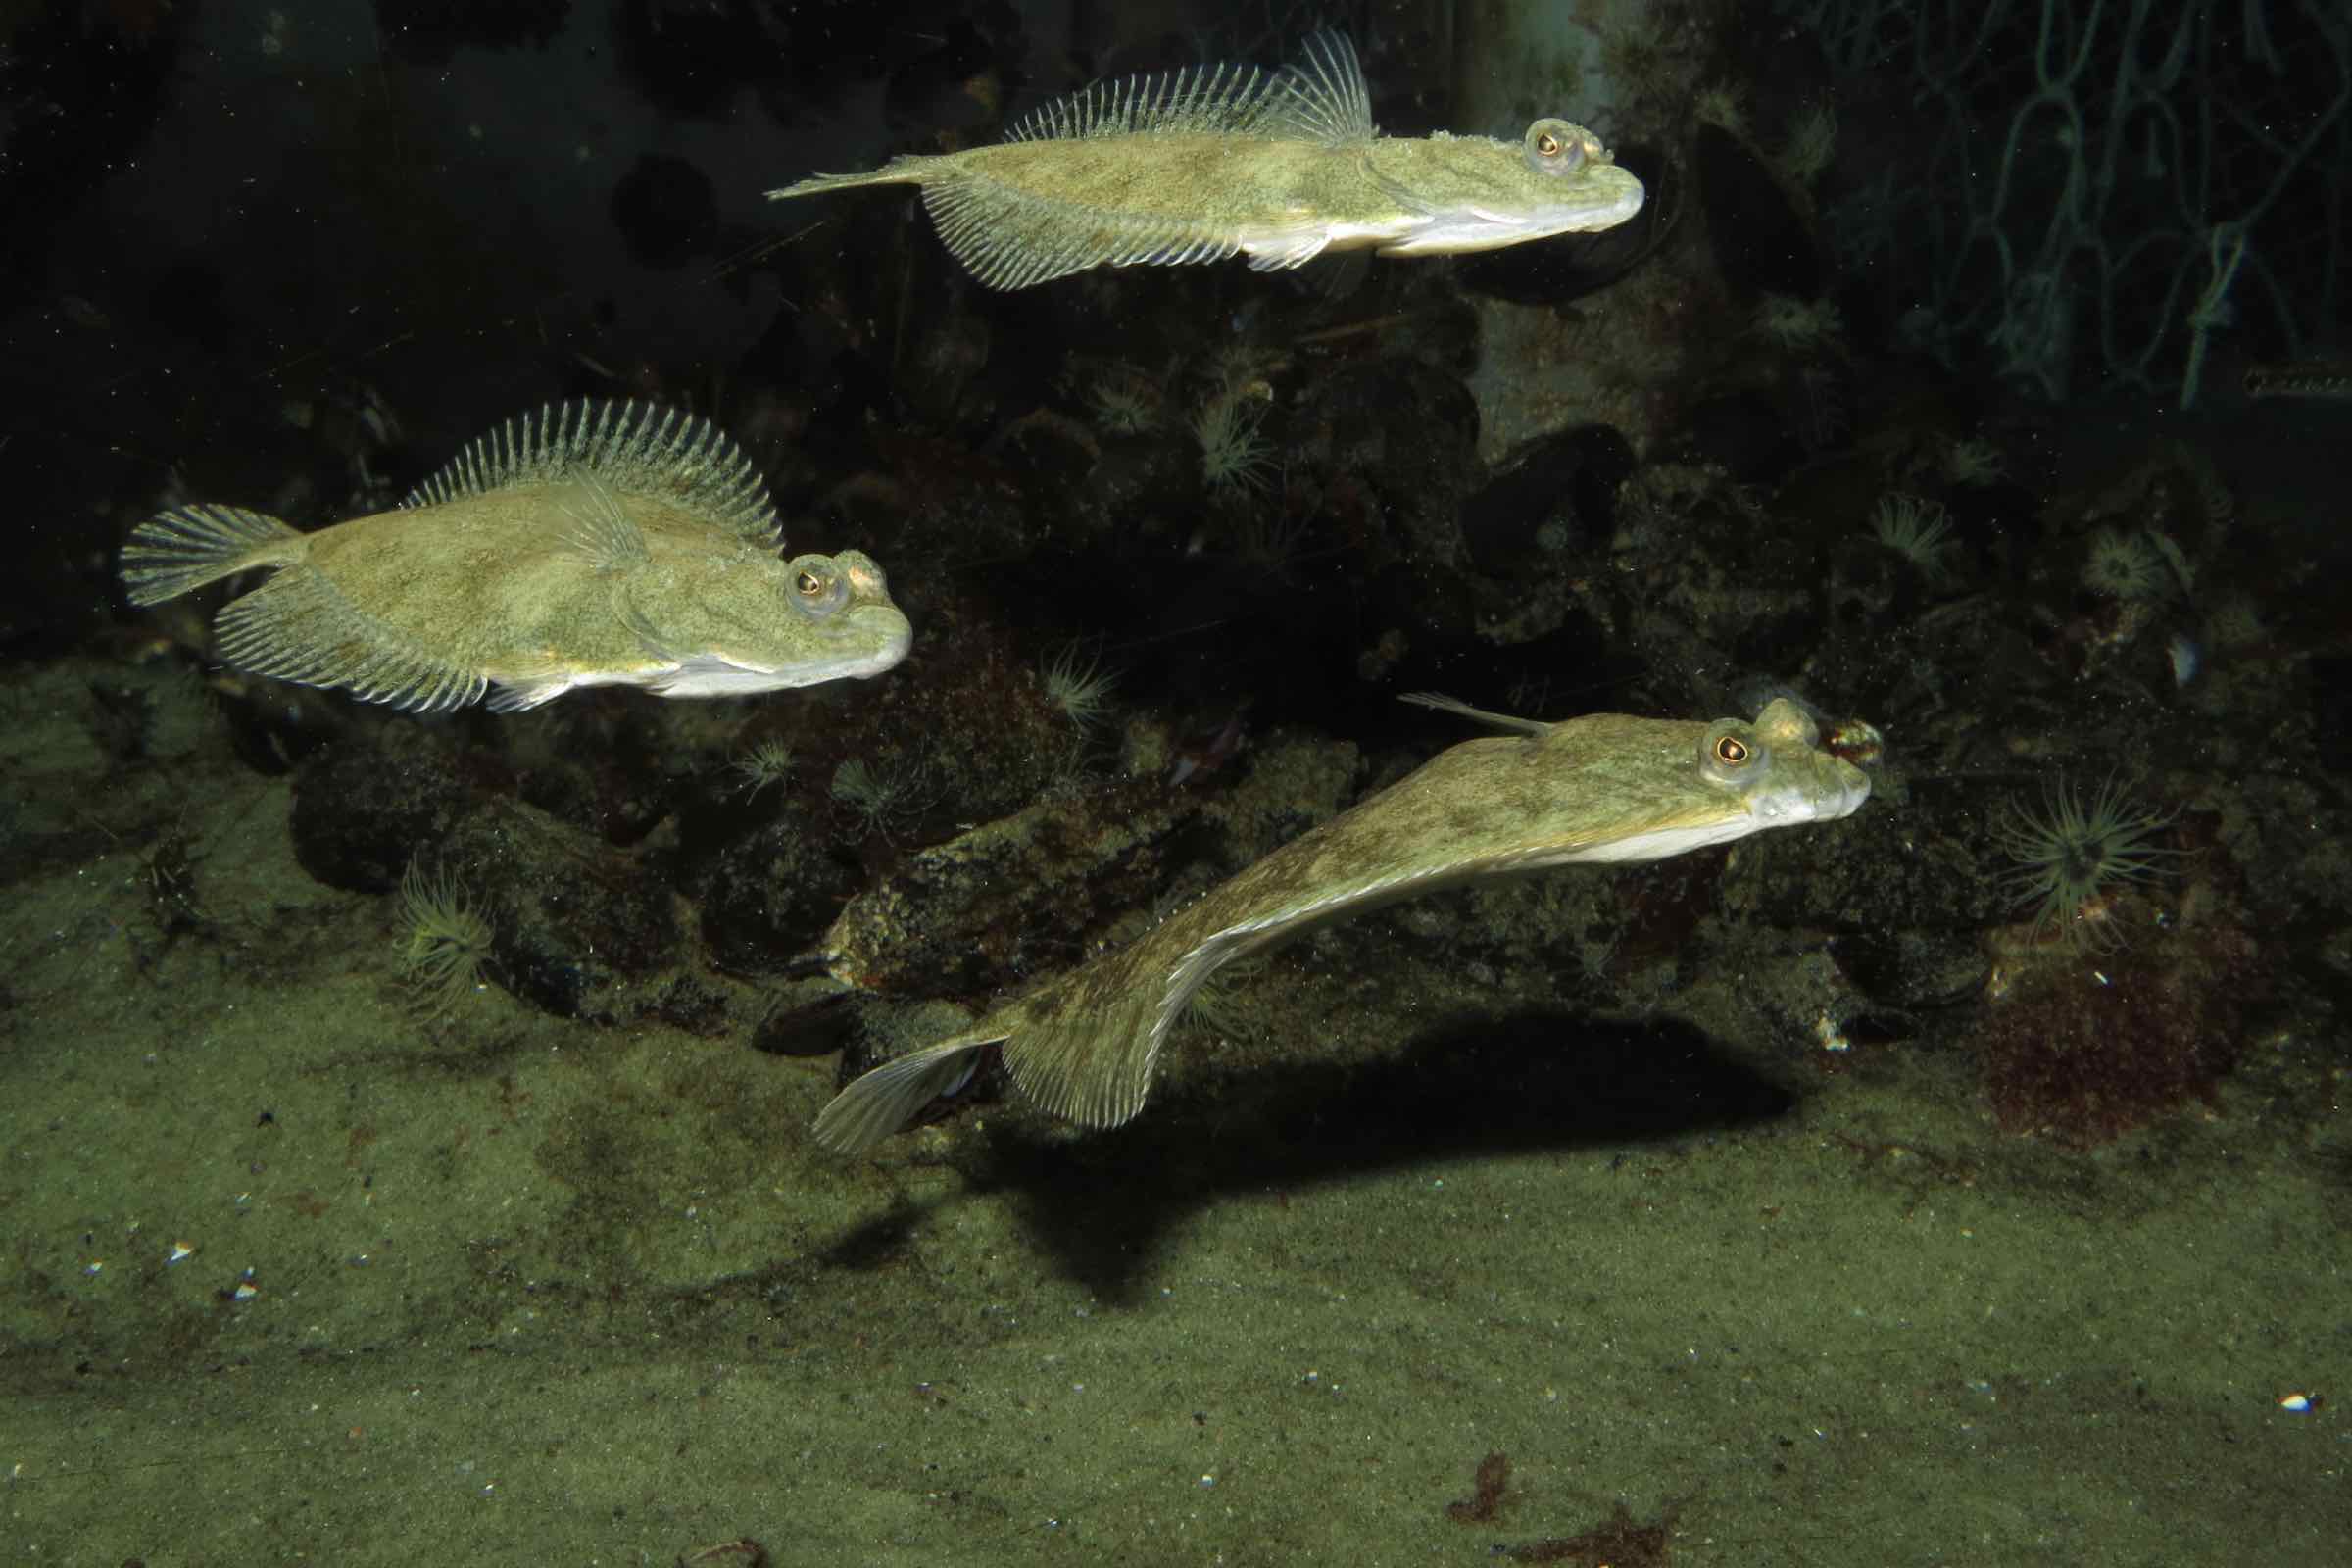 Aquarien geben uns die Möglichkeit unter die Wasseroberfläche zu blicken und die dortigen Tiere zu beobachten. Bei der Fütterung bekommen wir die häufigsten Fische des Wattenmeers so zu sehen.